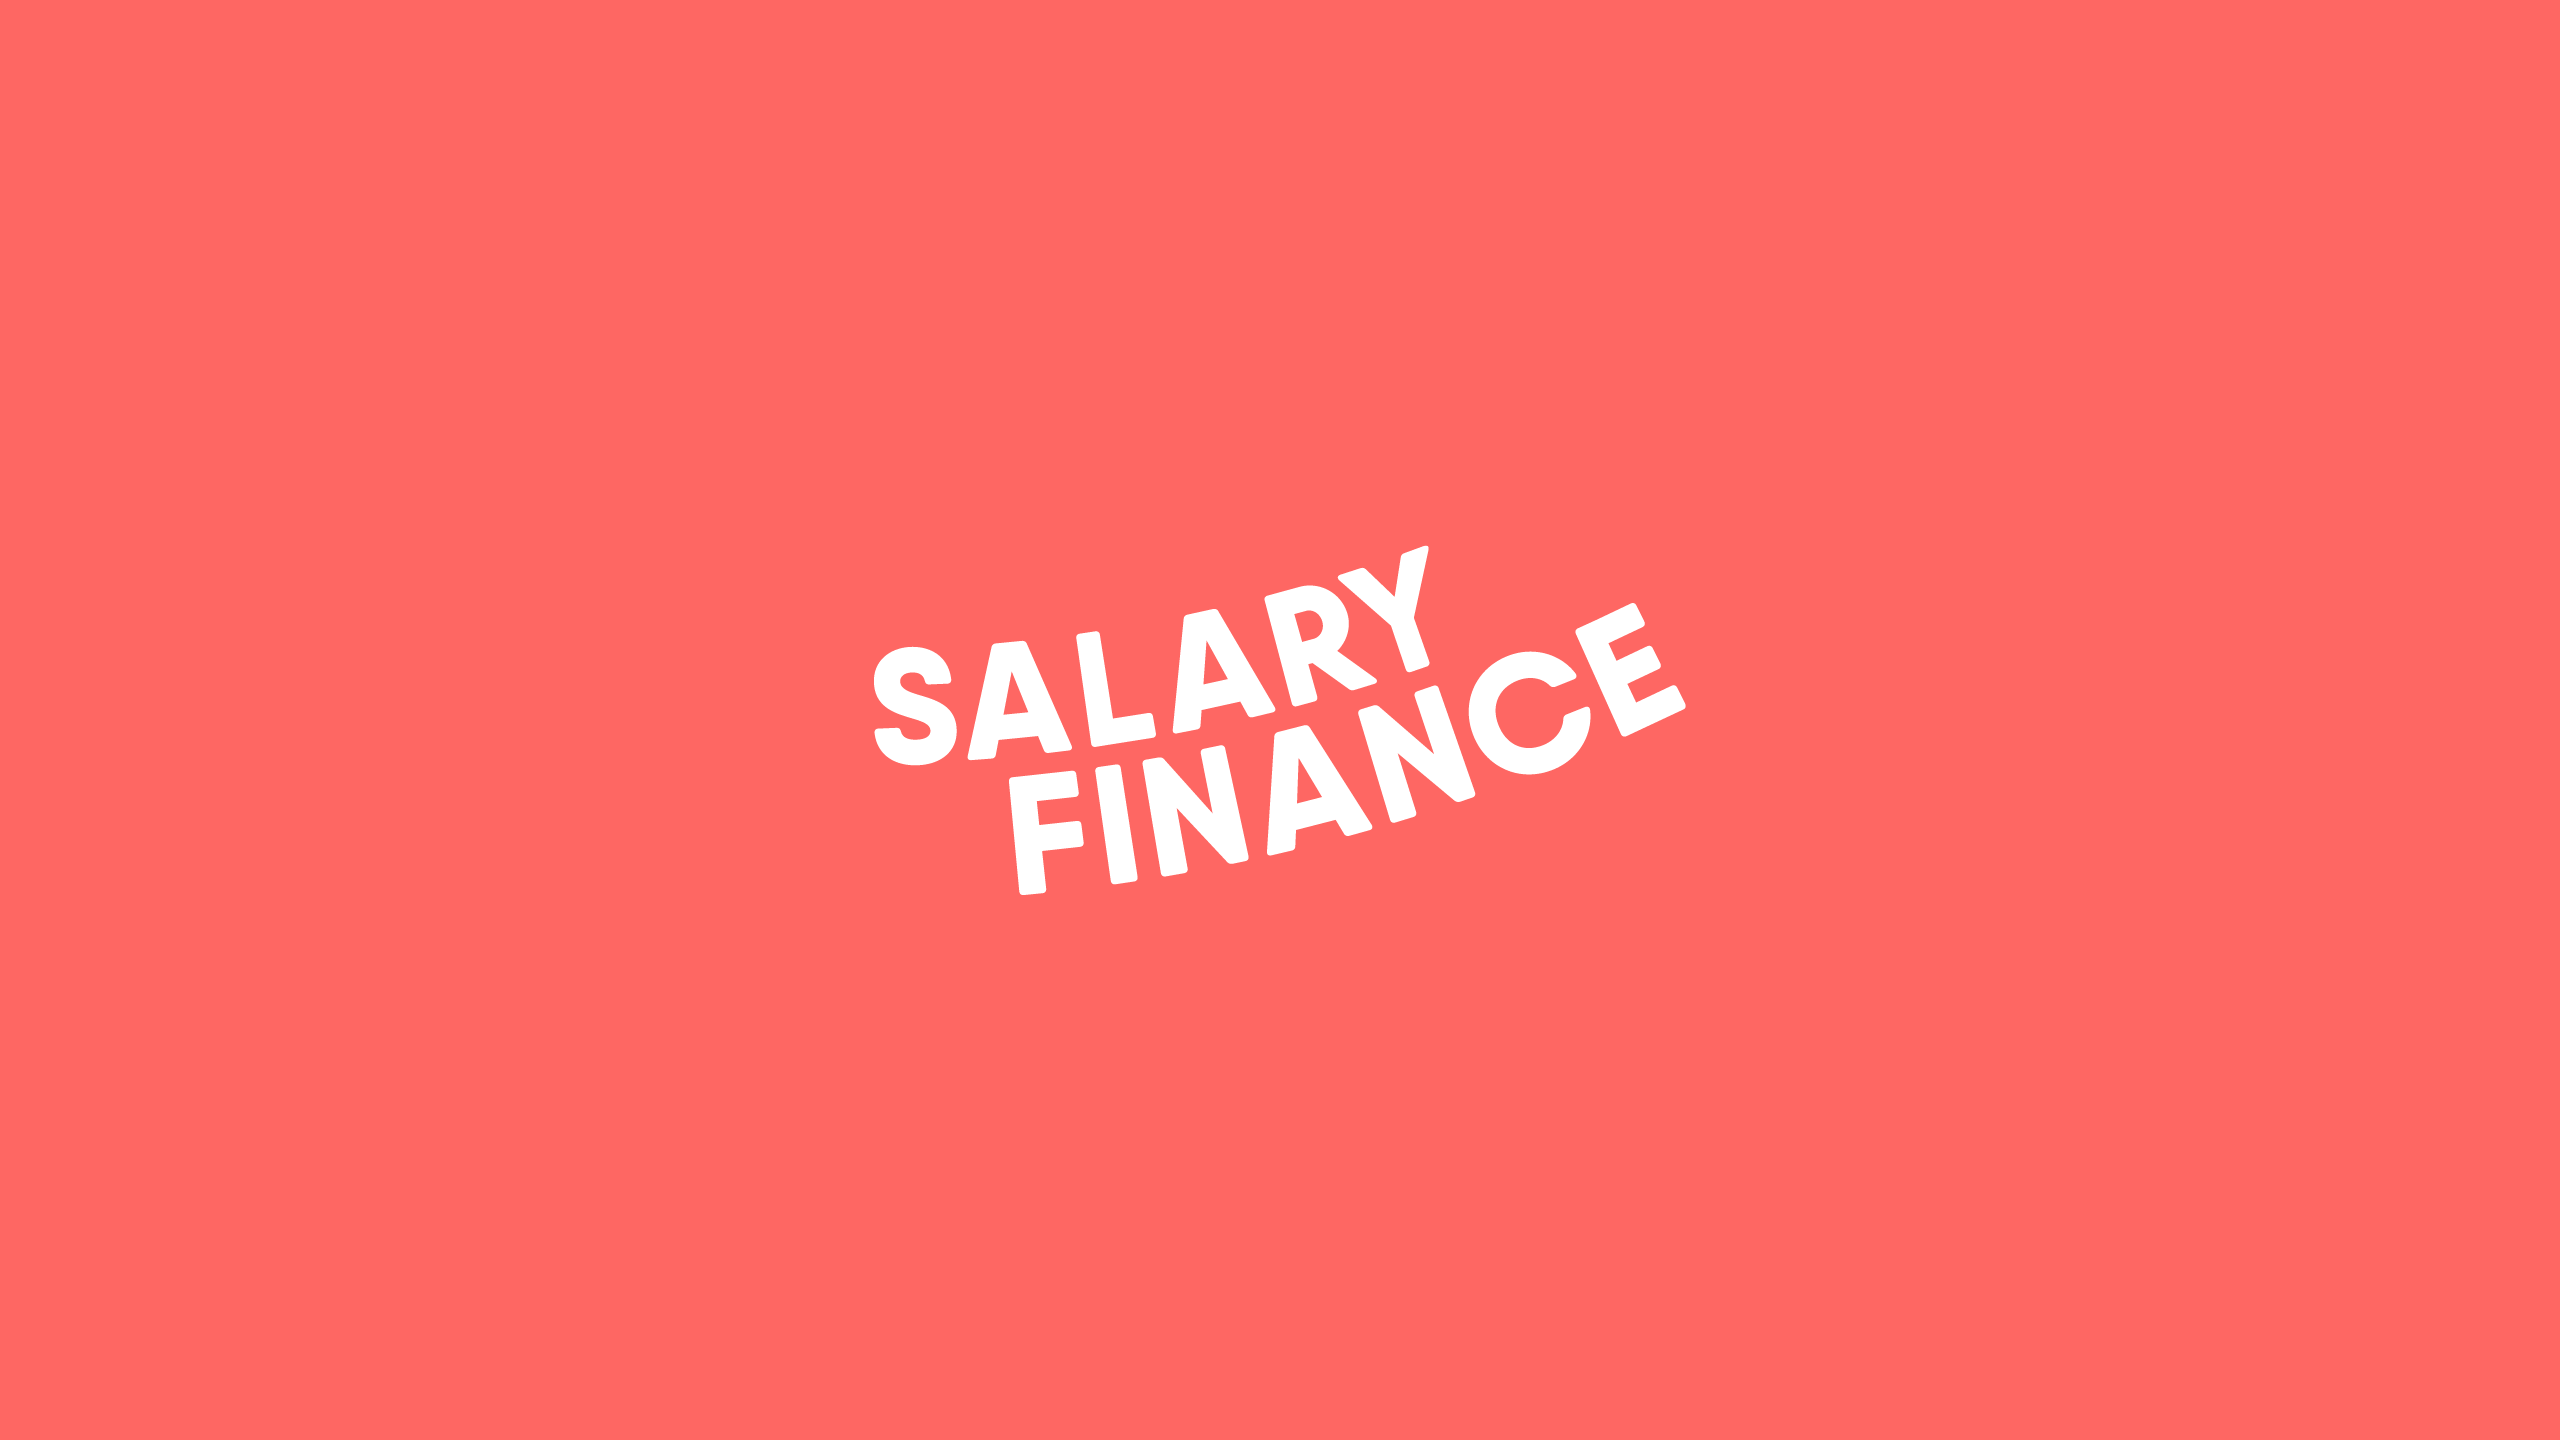 Salary Finance - Branding a fintech start-up - Ragged Edge